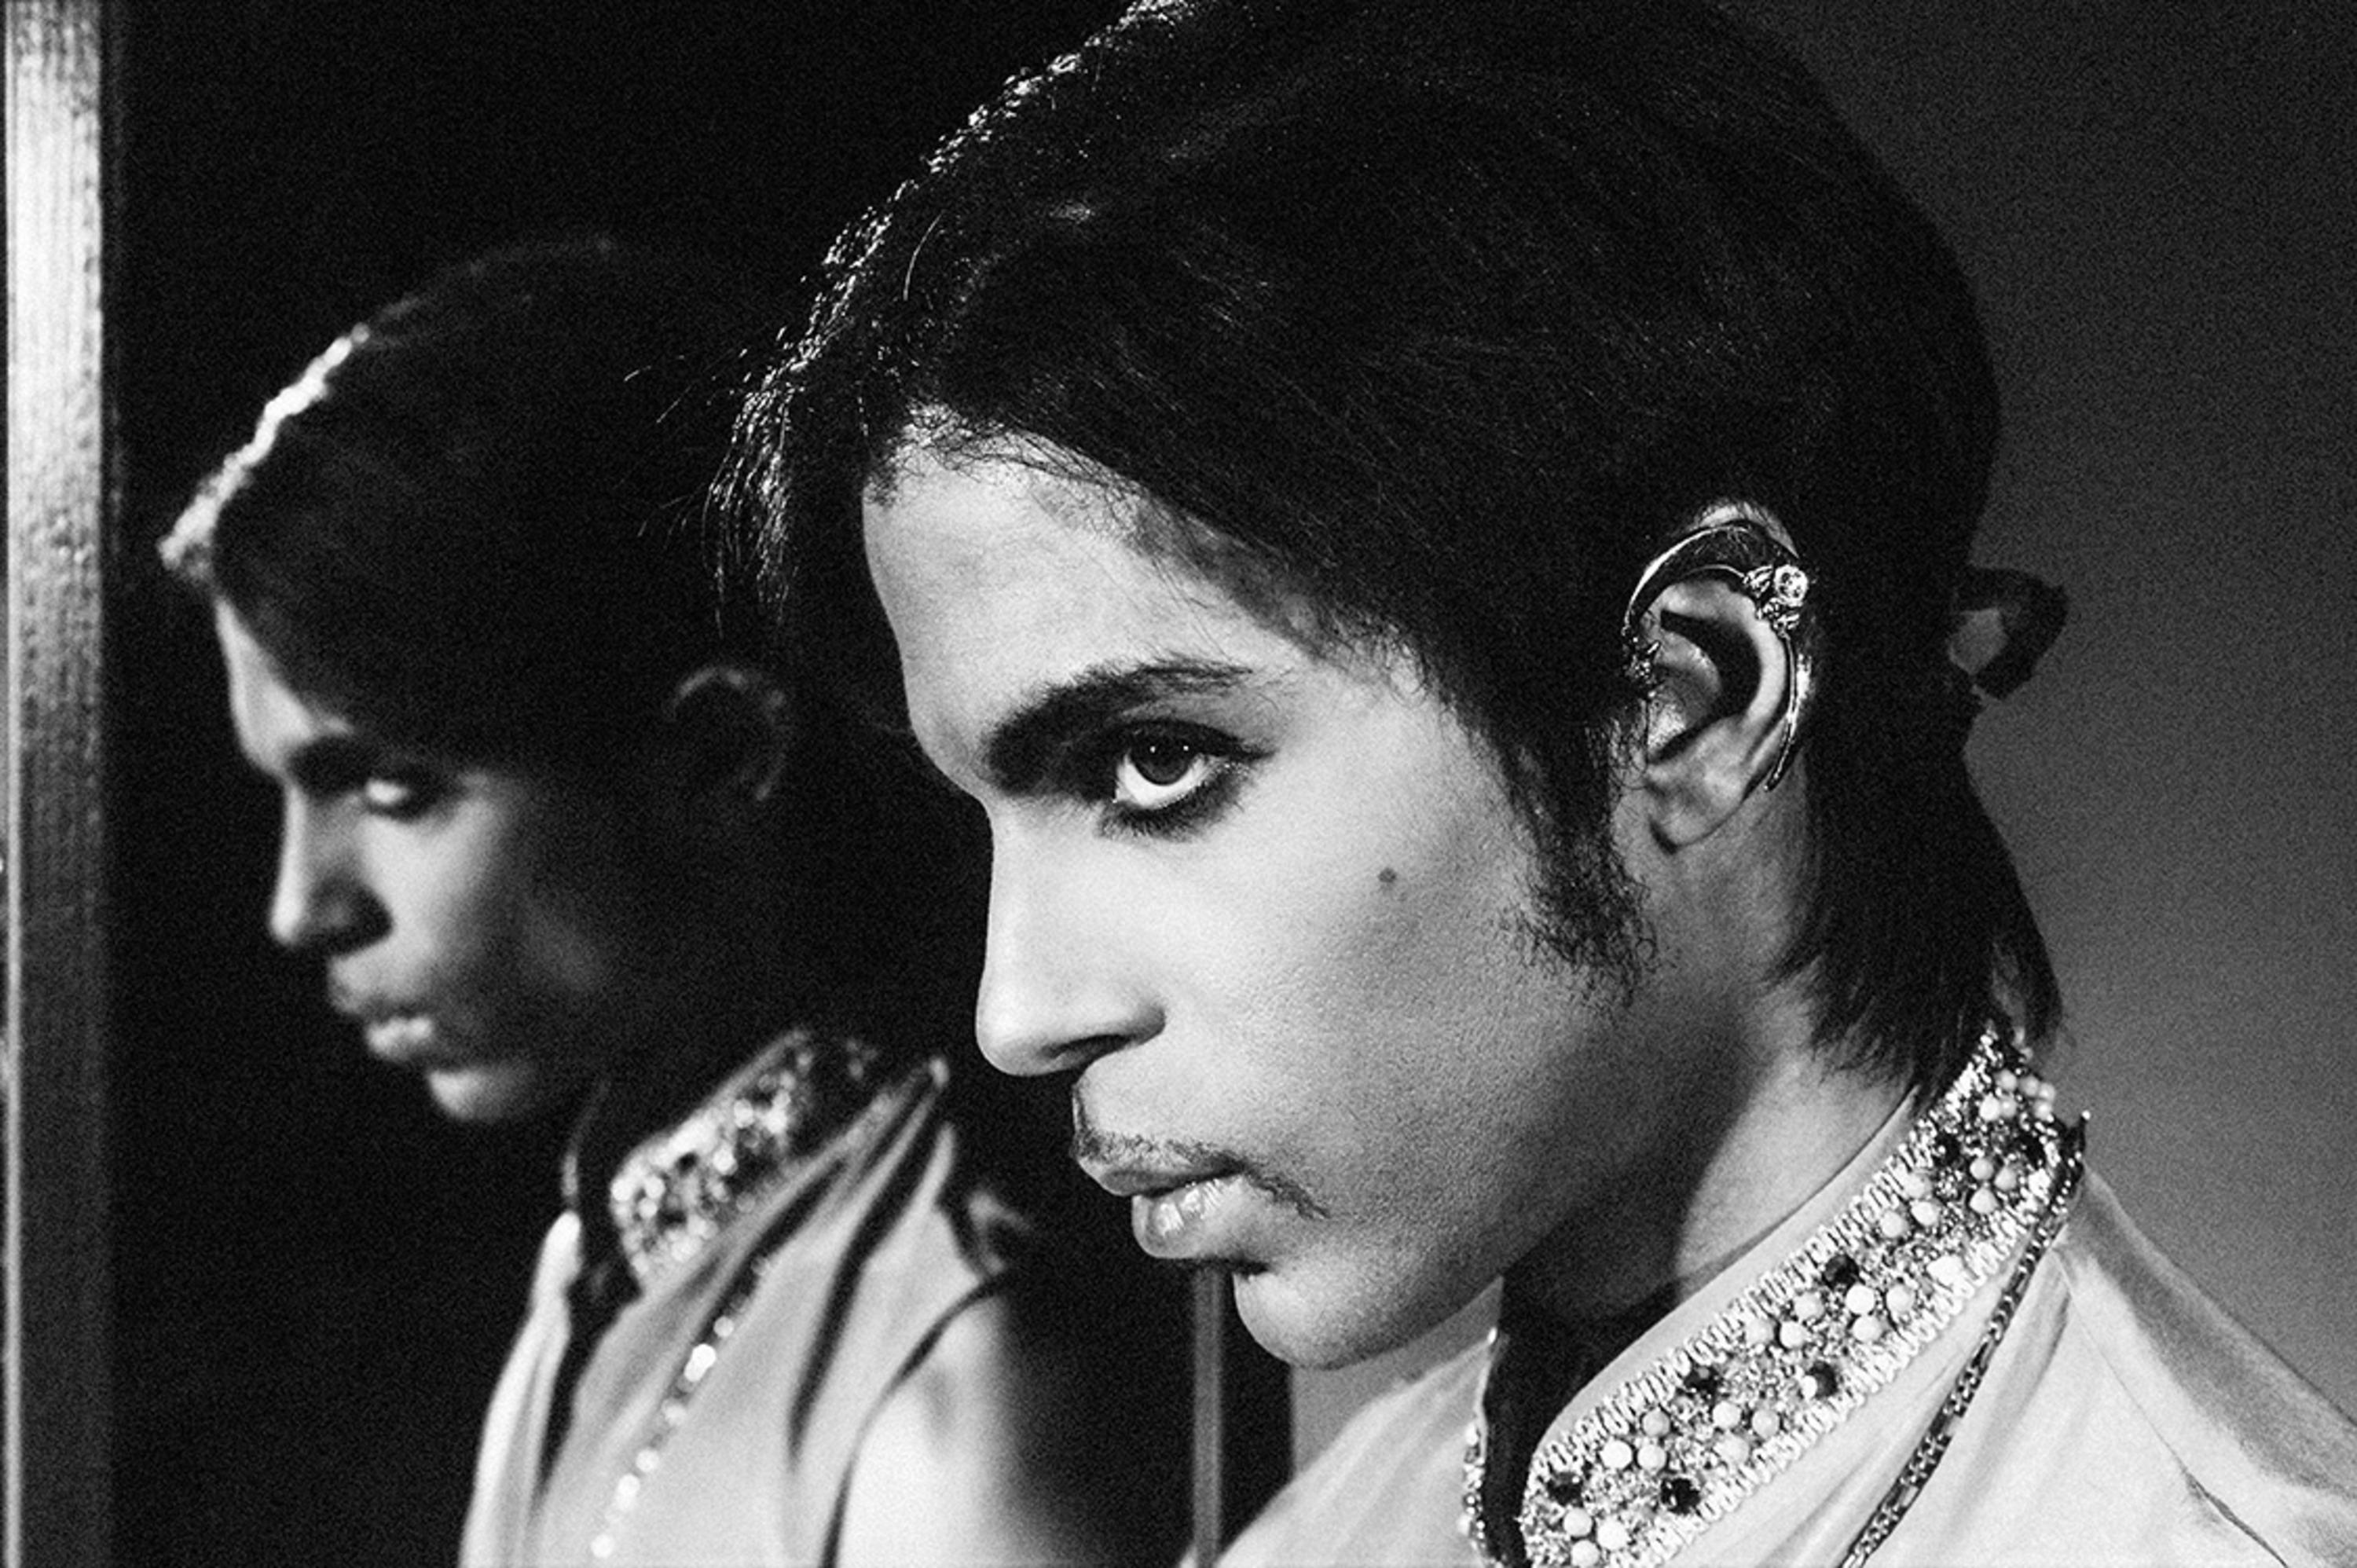 Porträt des amerikanischen Singer-Songwriters, Multiinstrumentalisten und Plattenproduzenten Prince.

Verfügbare Größen: 
12 "x16" Auflage von 25
16 "x20" Auflage von 25
20 "x24" Auflage von 25
30 "x40" Auflage von 25
40 "x60" Auflage von 25
48